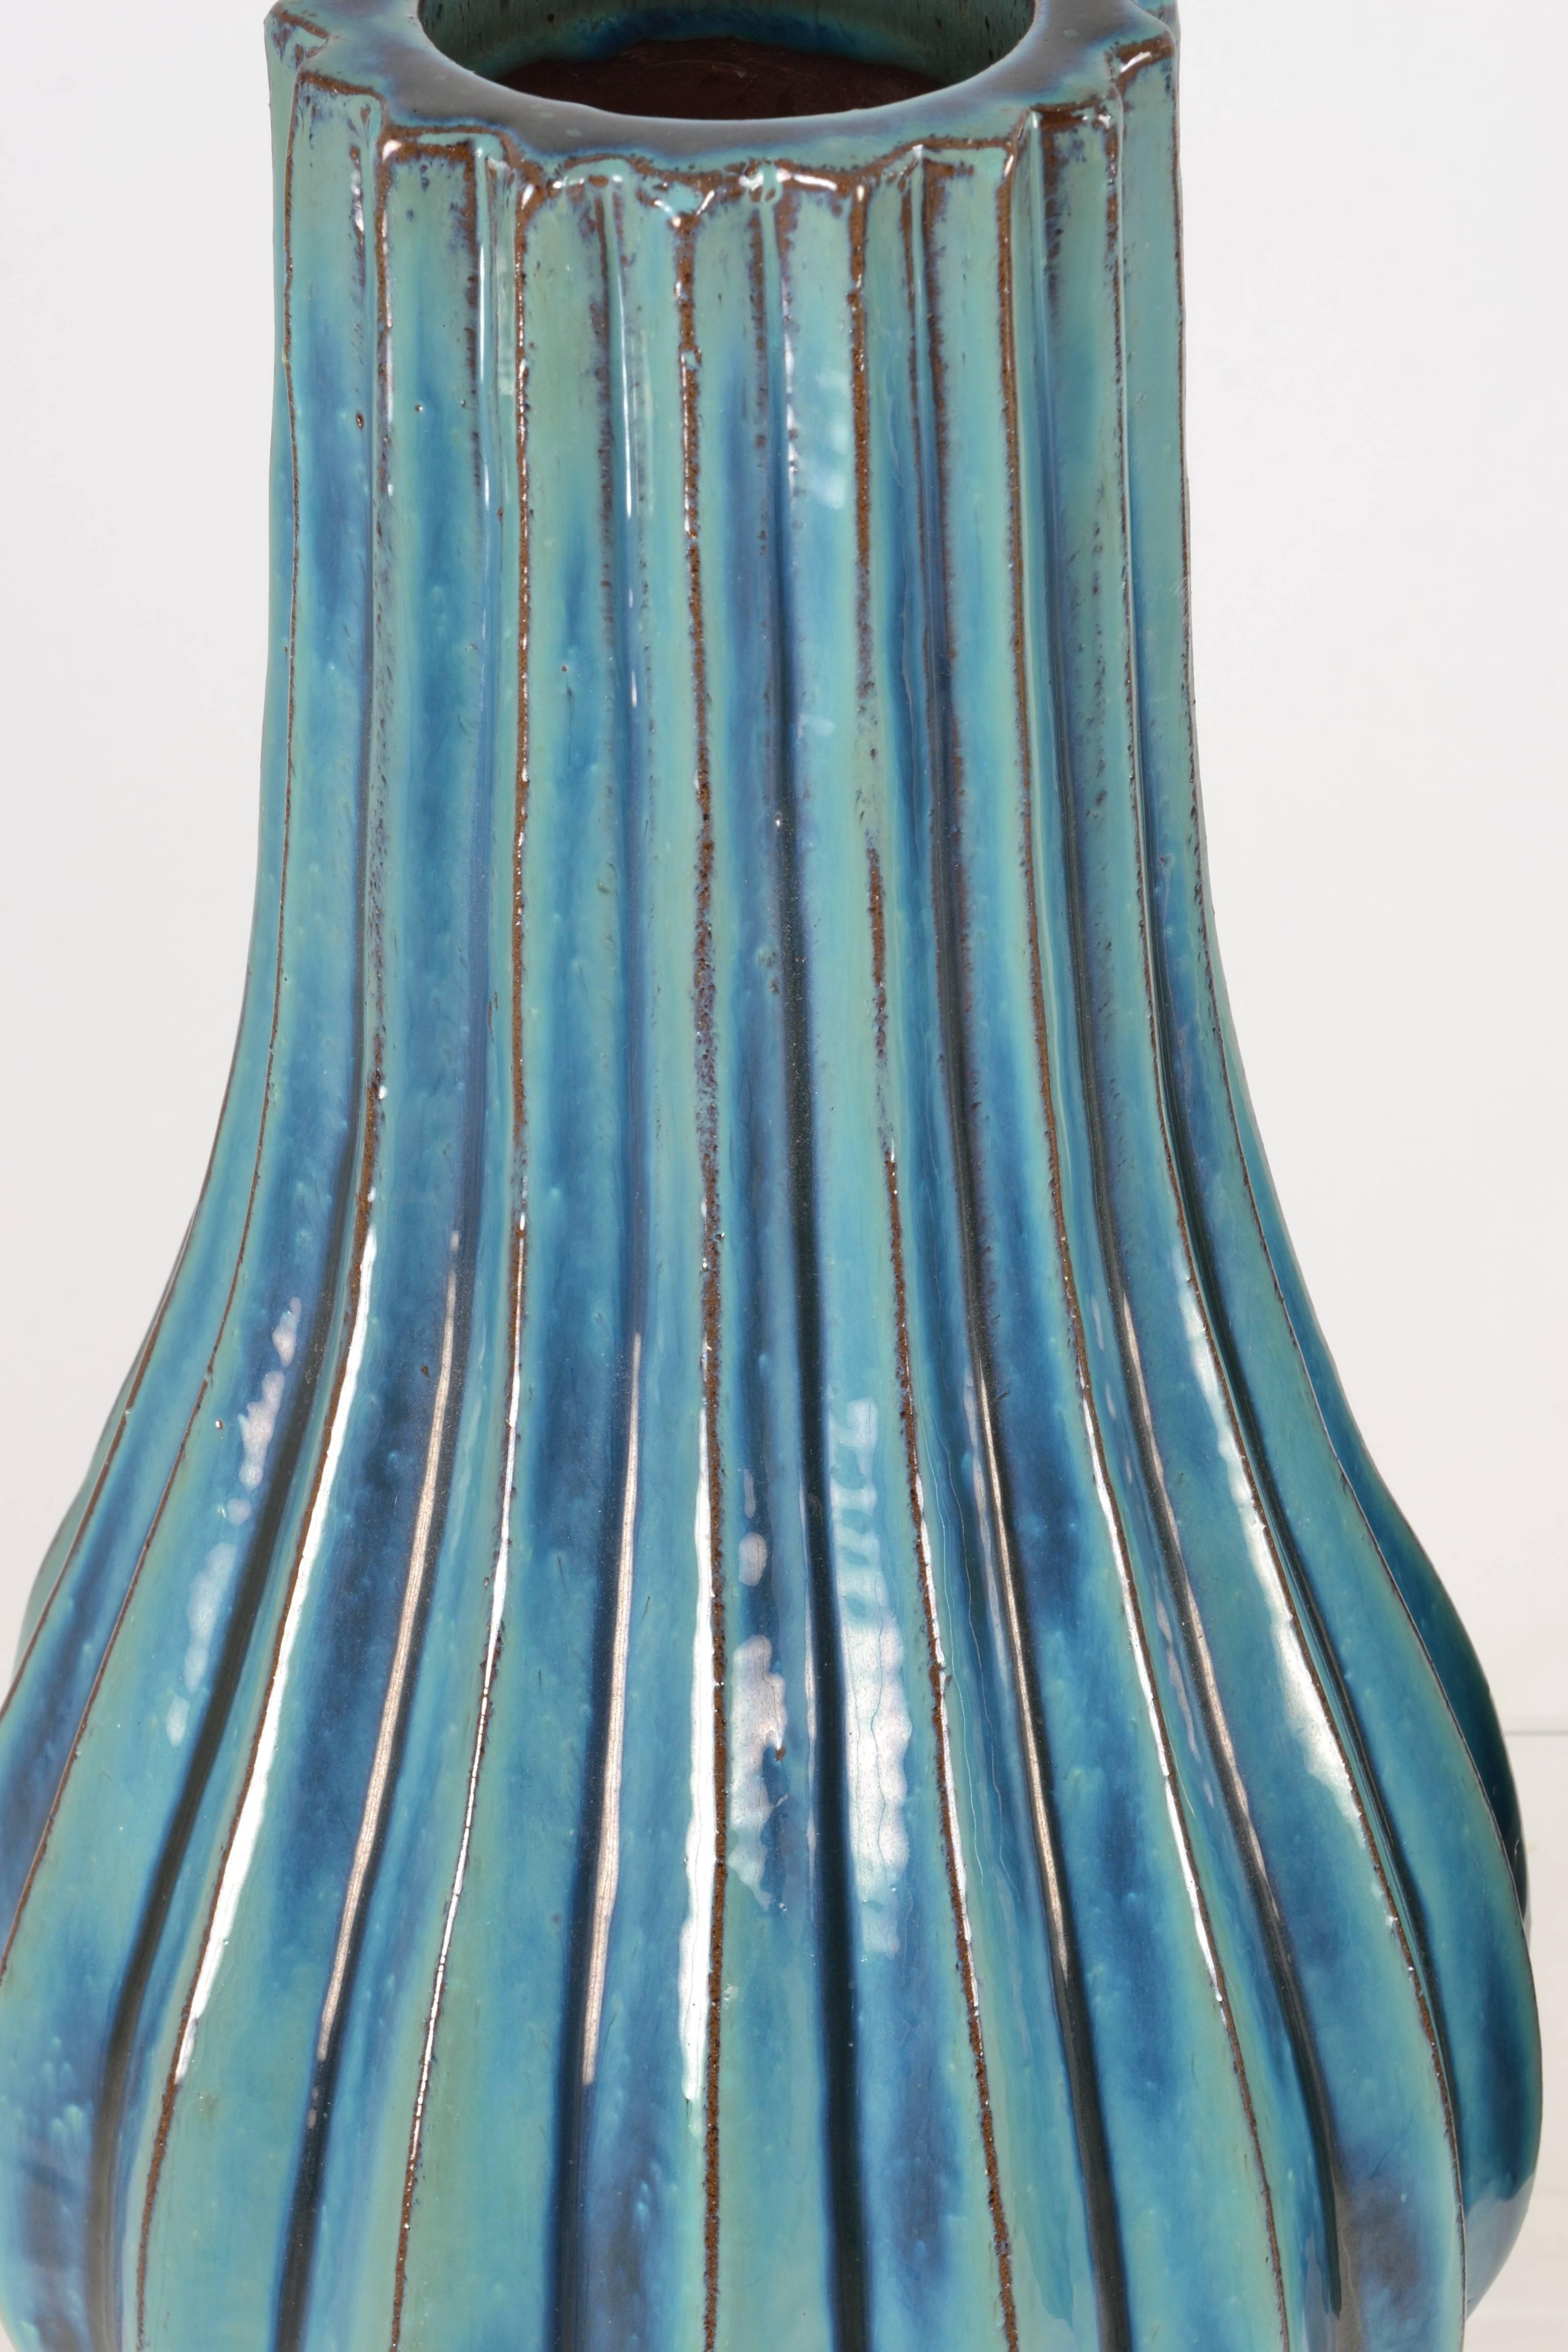 Large Pair of Italian Glazed Terracotta Vases 1